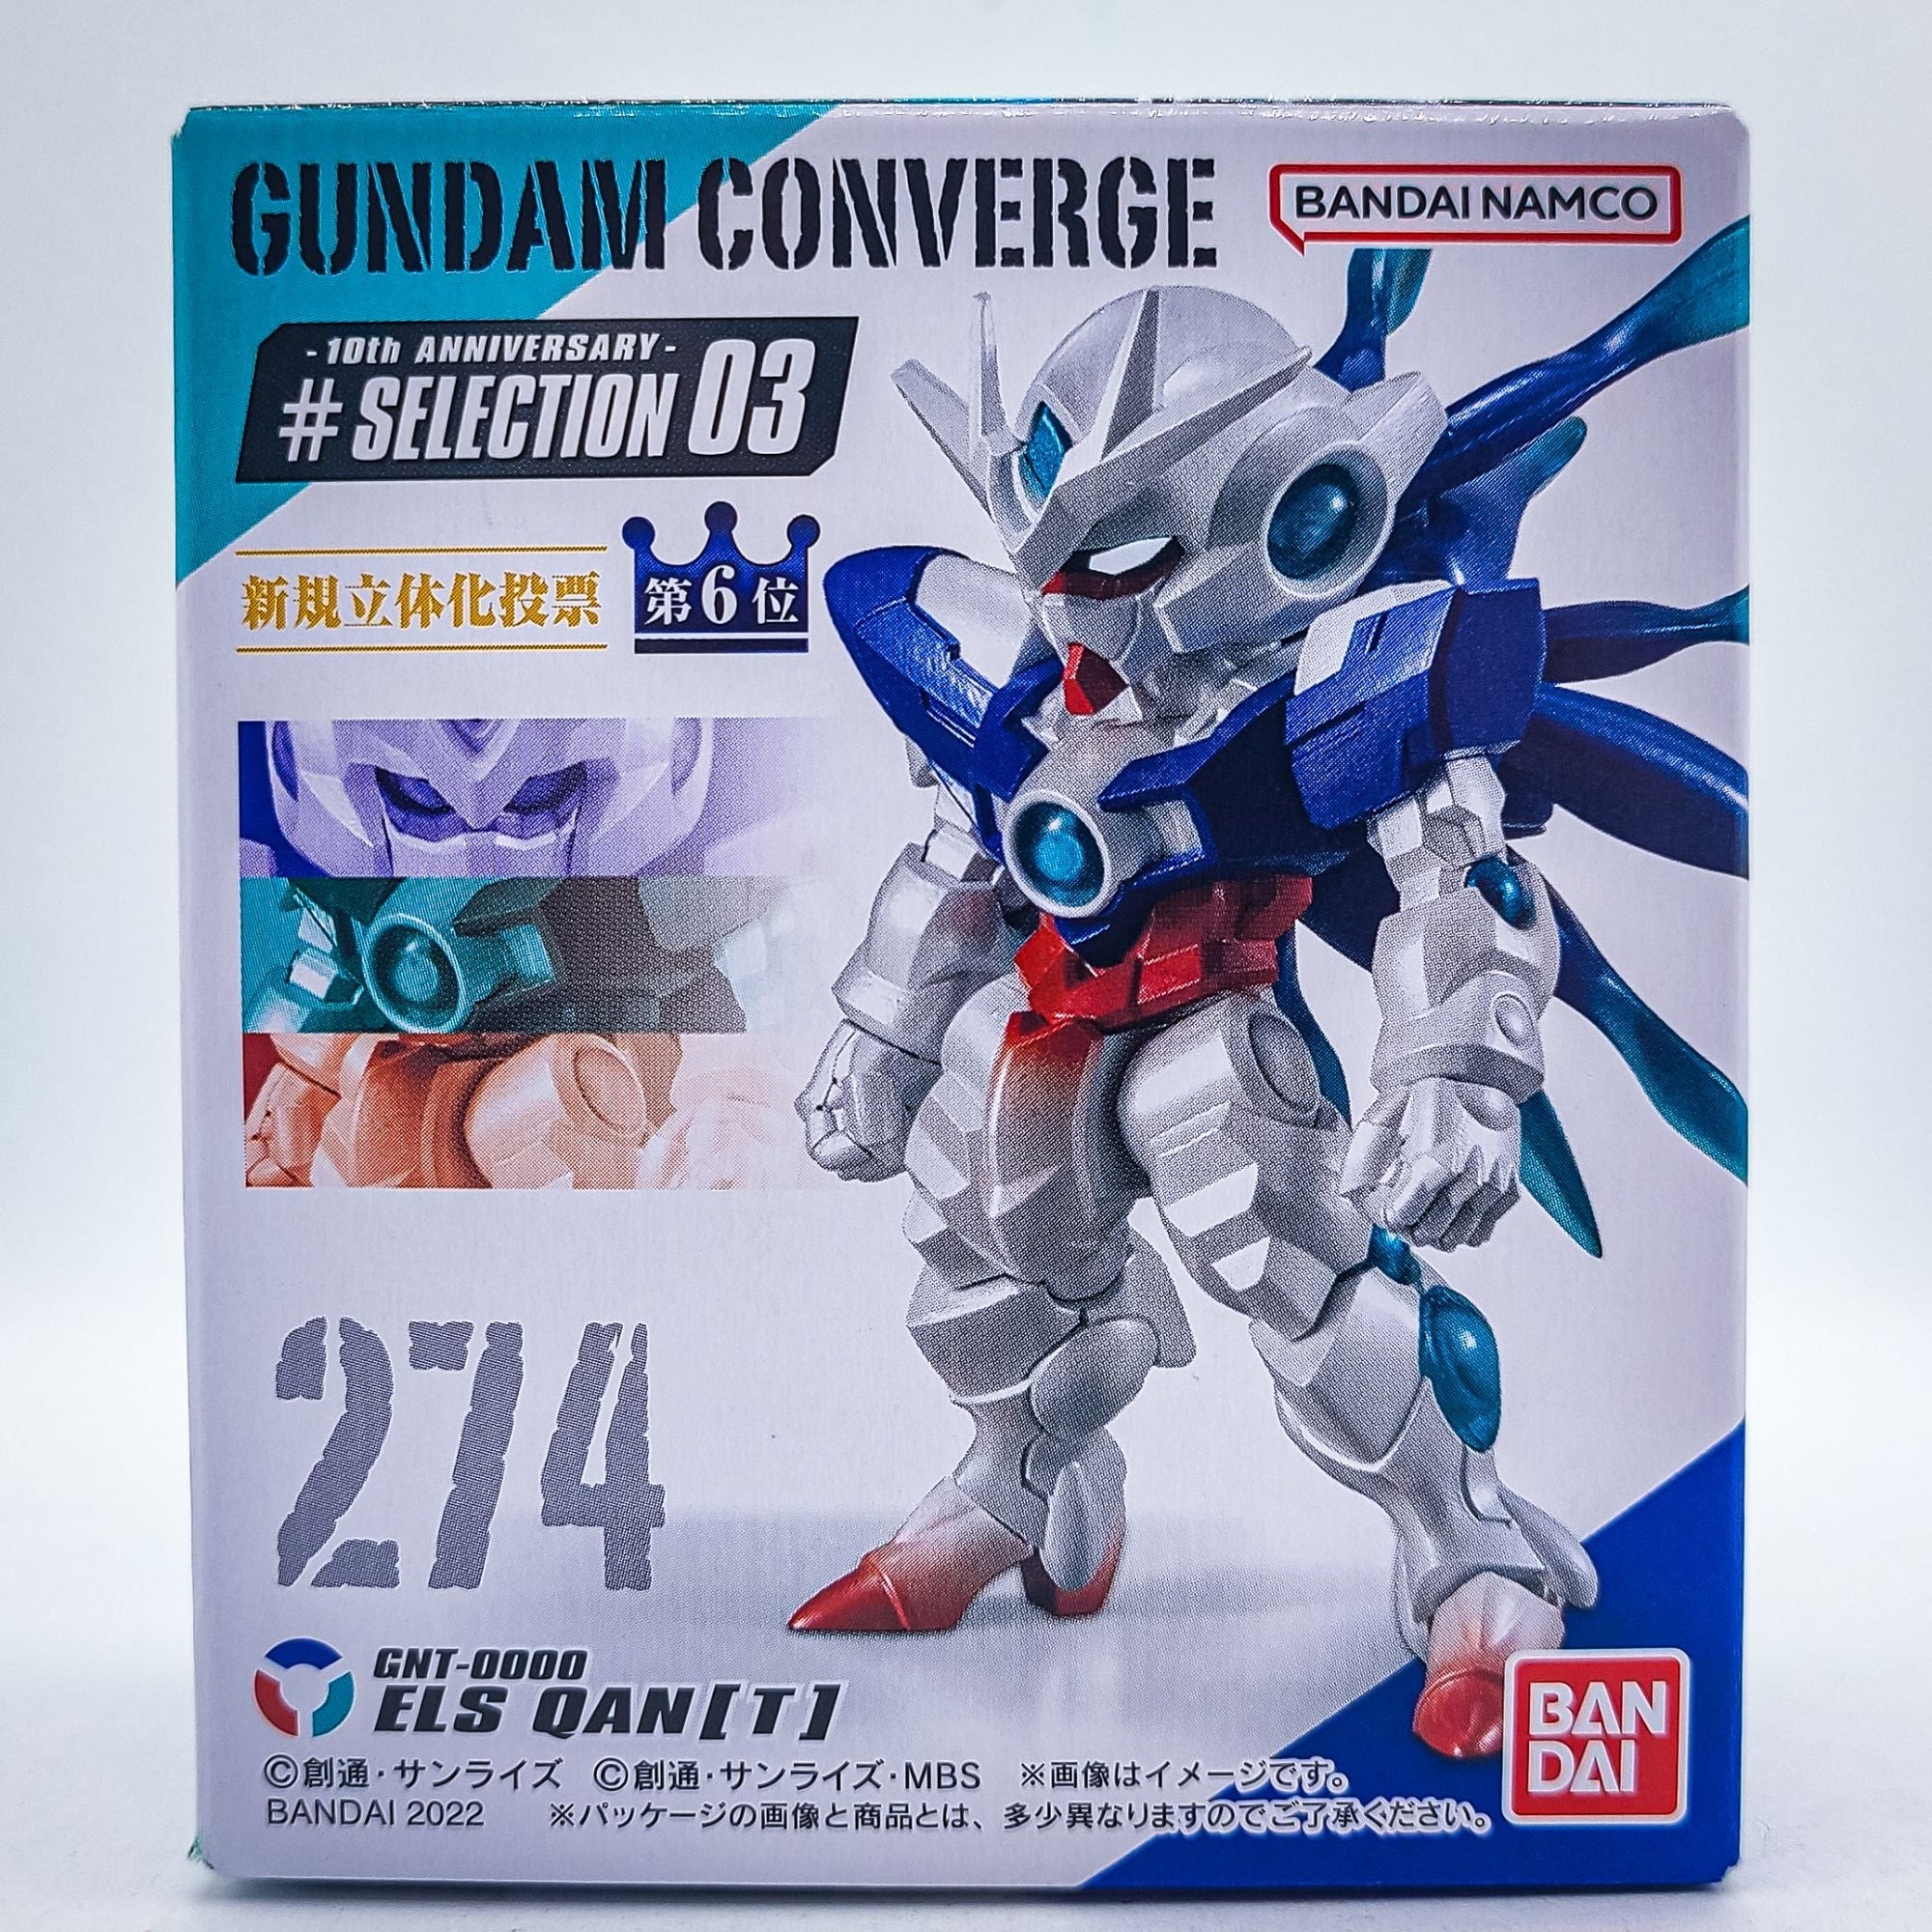 Gundam Converge #274 ELS QAN(T) by Bandai - 1